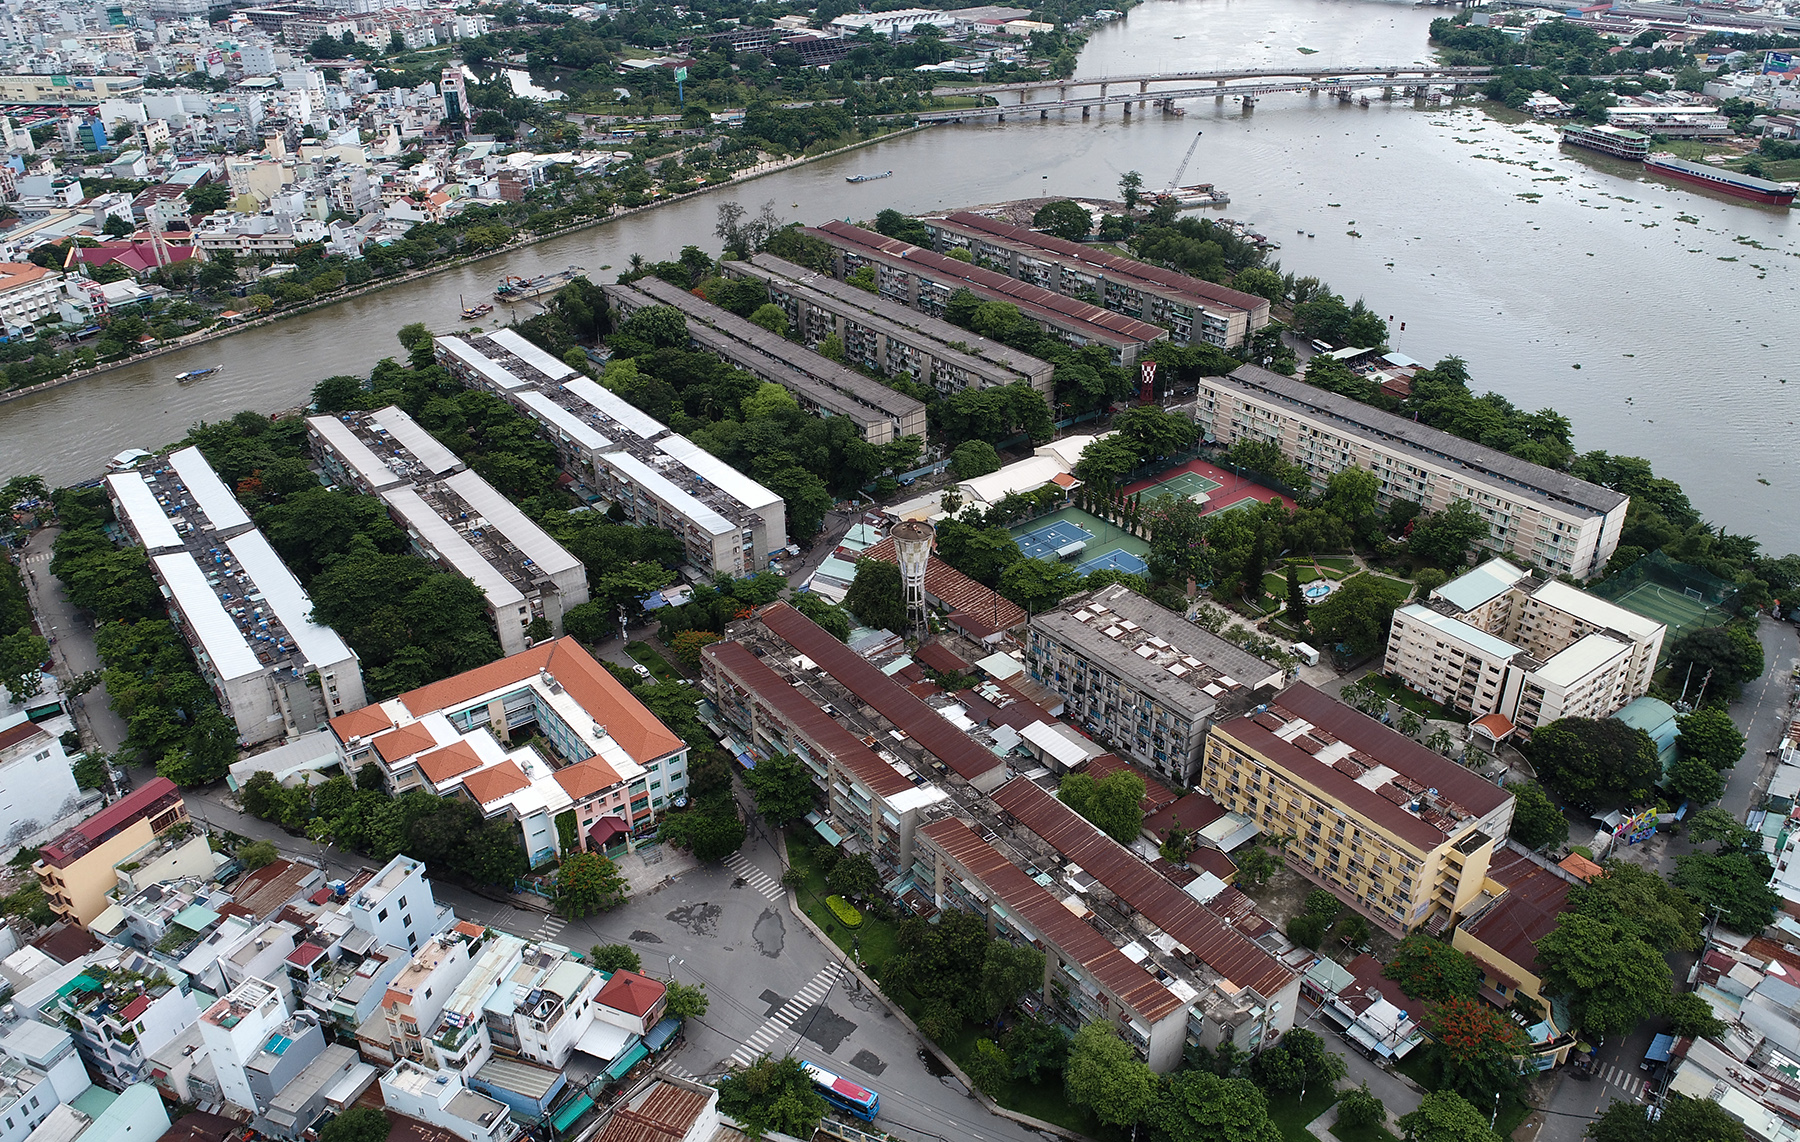 Cư xá Thanh Đa (phường 27, quận Bình Thạnh, TP.HCM) nằm ở bán đảo Thanh Đa có tổng diện tích 2 khu khoảng 36 ha, có cụm 15 lô chữ và 8 lô số được xây dựng từ năm 1960.